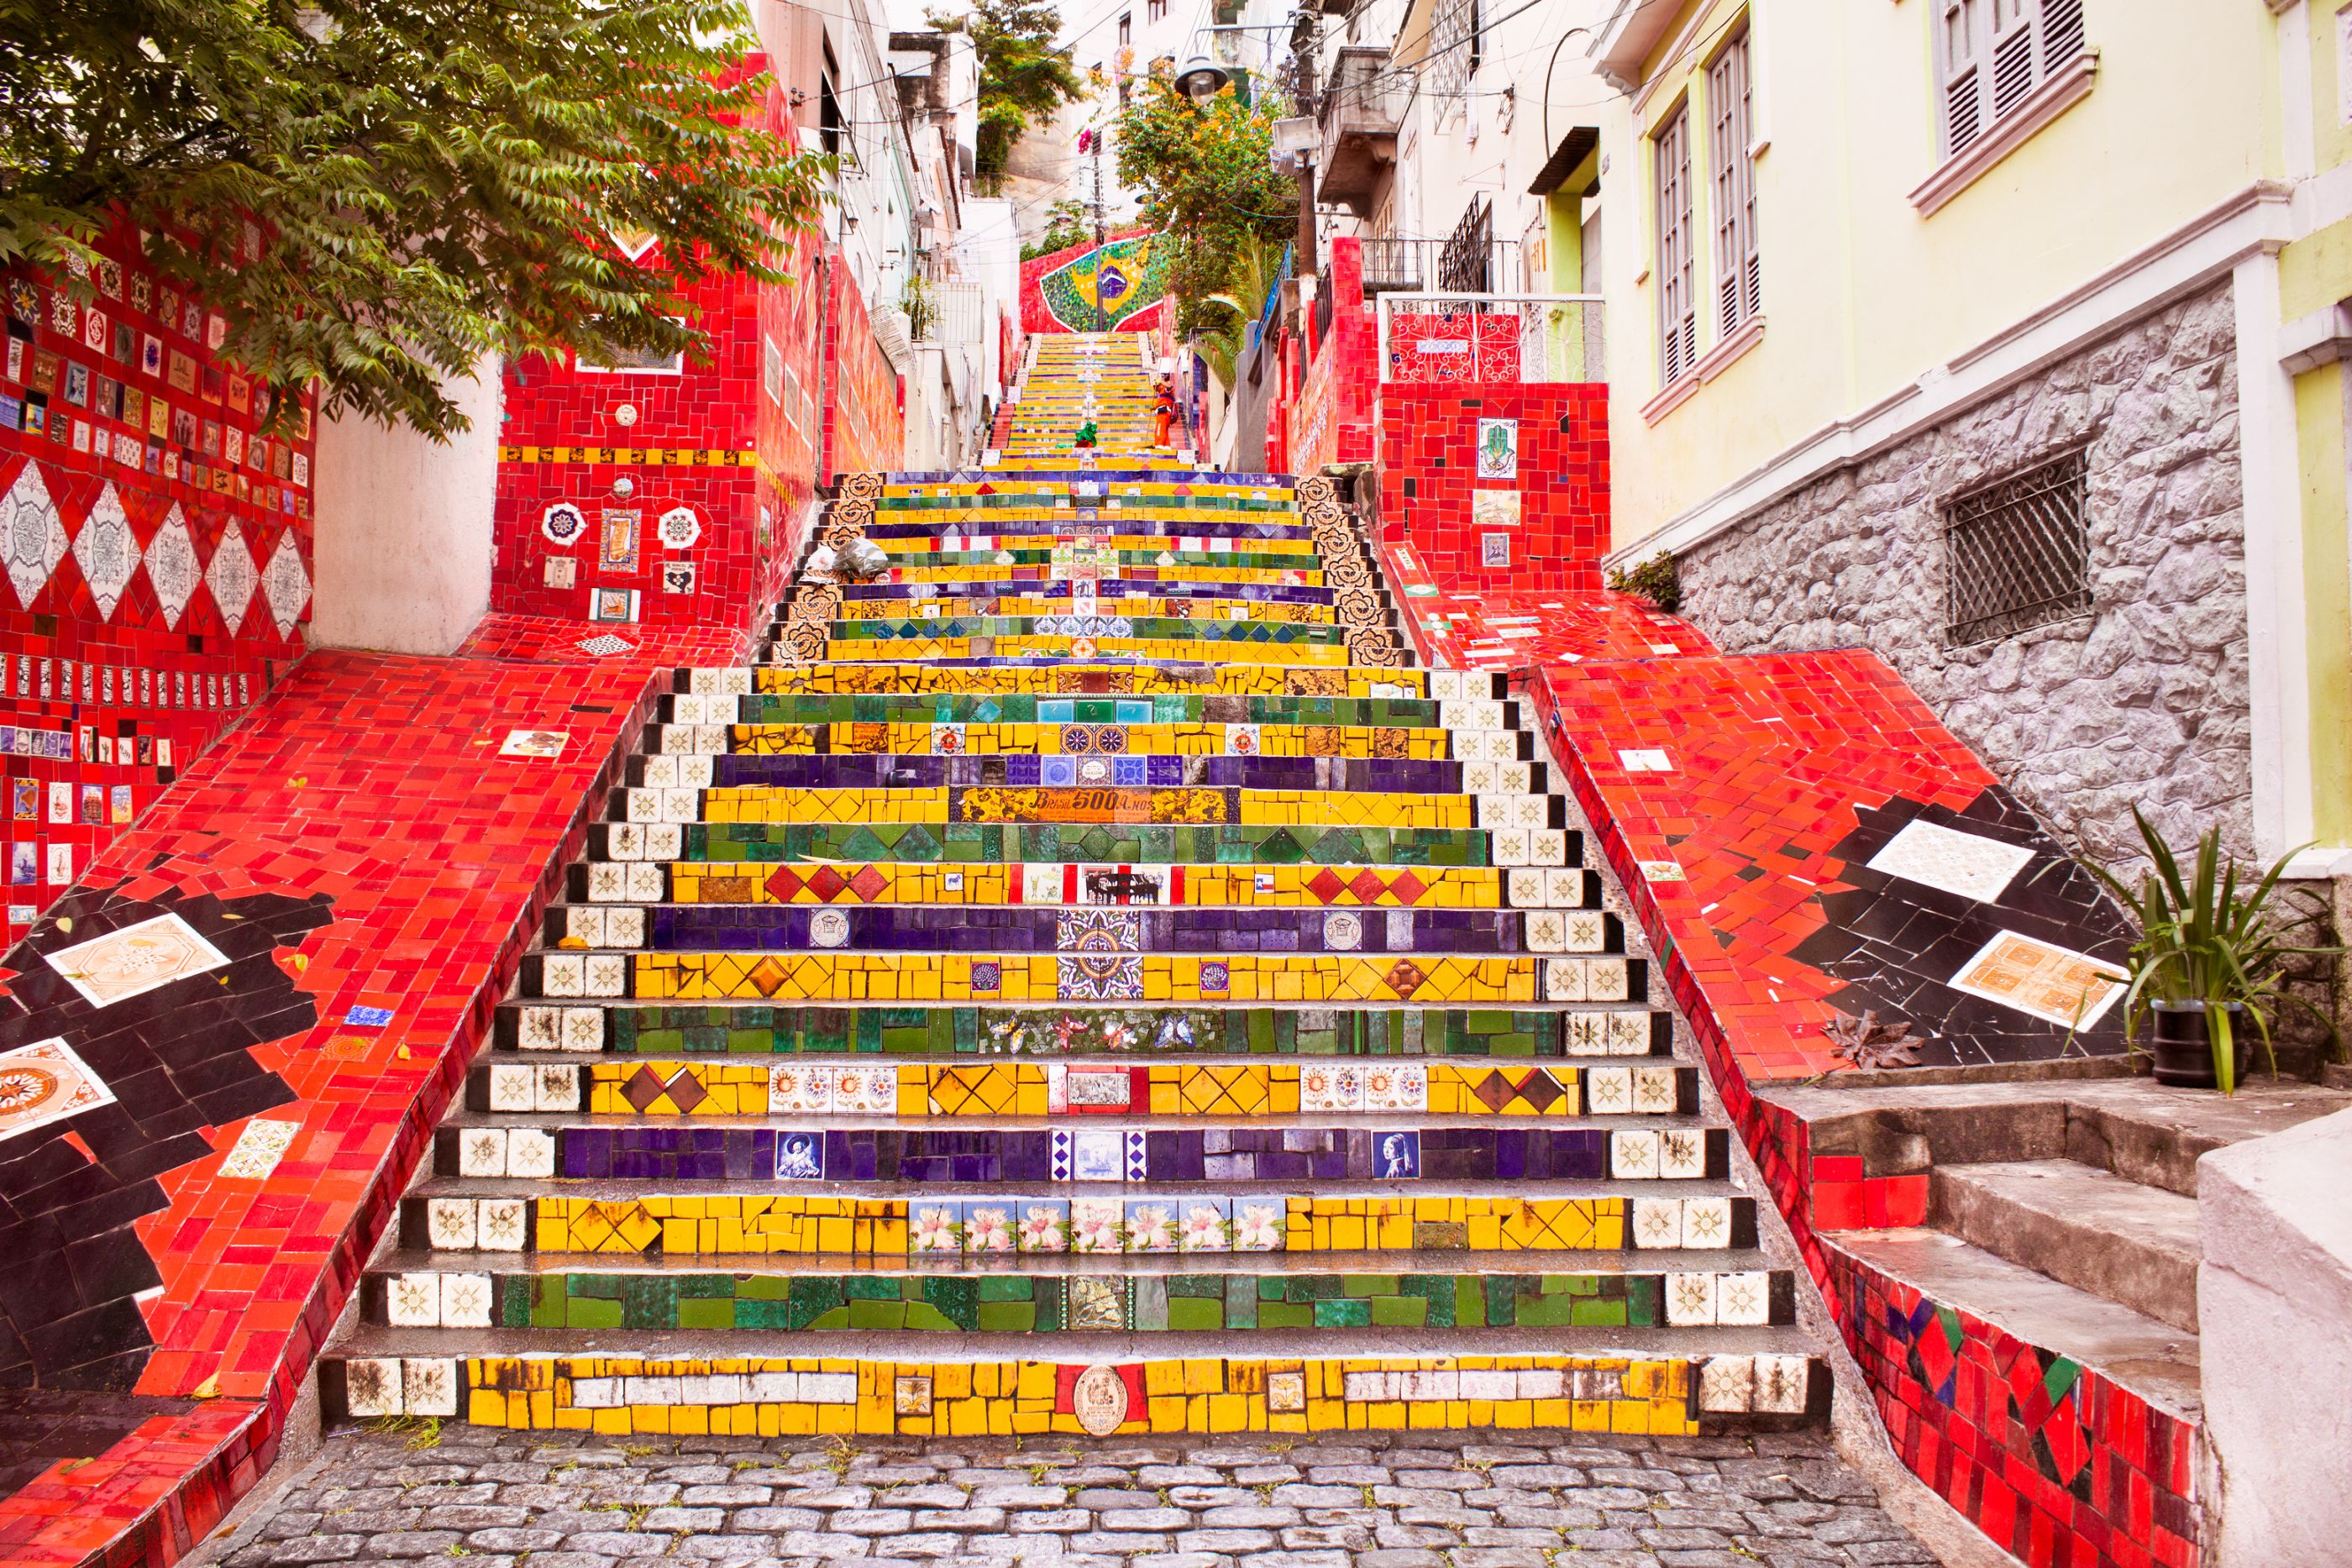 Escadaria Selaron in Rio de Janeiro, Brazil